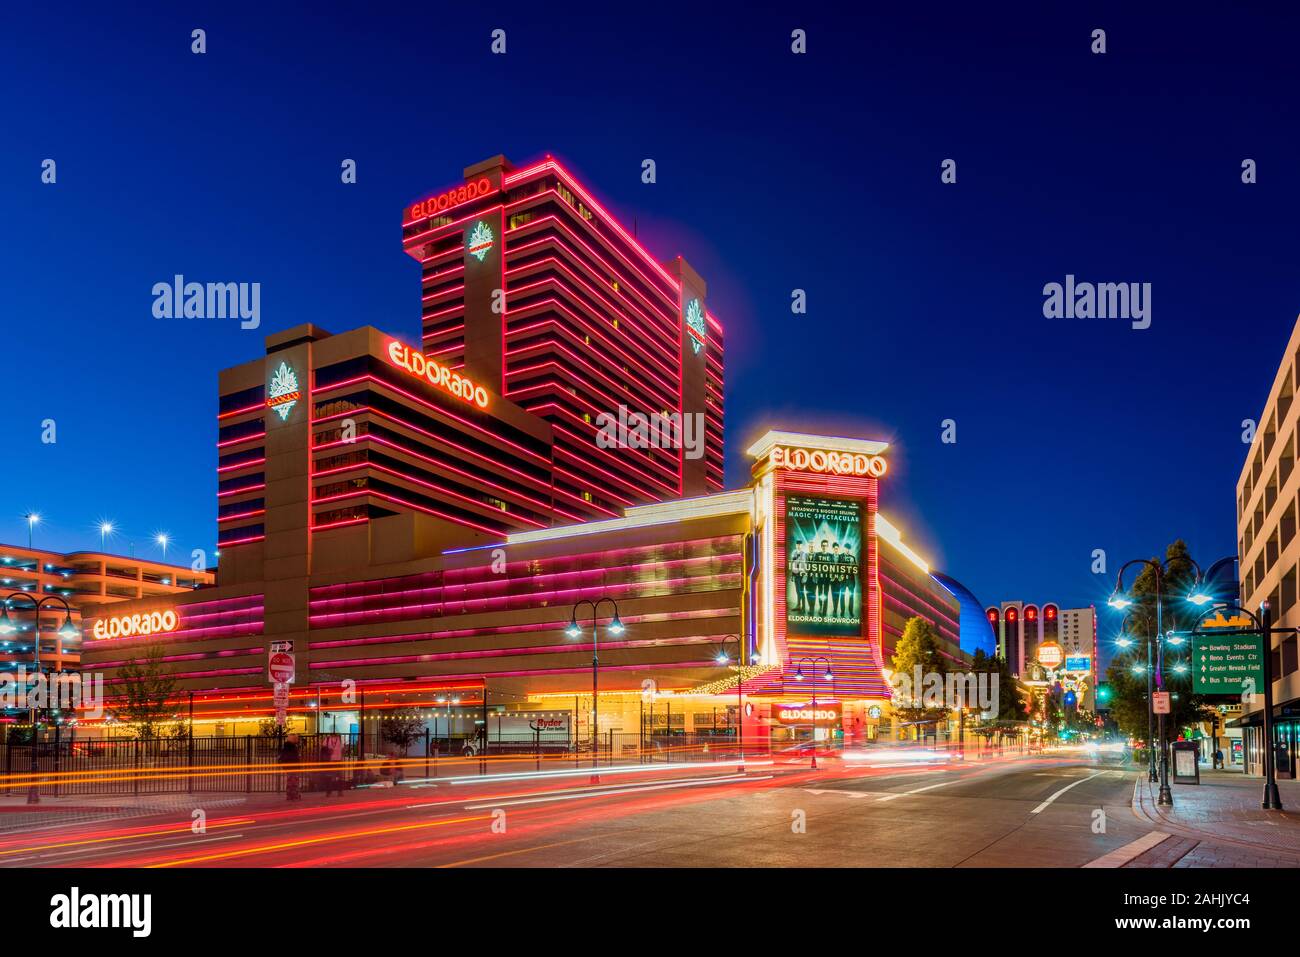 Eldorado Resort Casino à Reno NEVADA USA au crépuscule. C'est un hôtel et casino et a ouvert ses portes en 1973. Il est administré par la société Eldorado Resorts. Banque D'Images